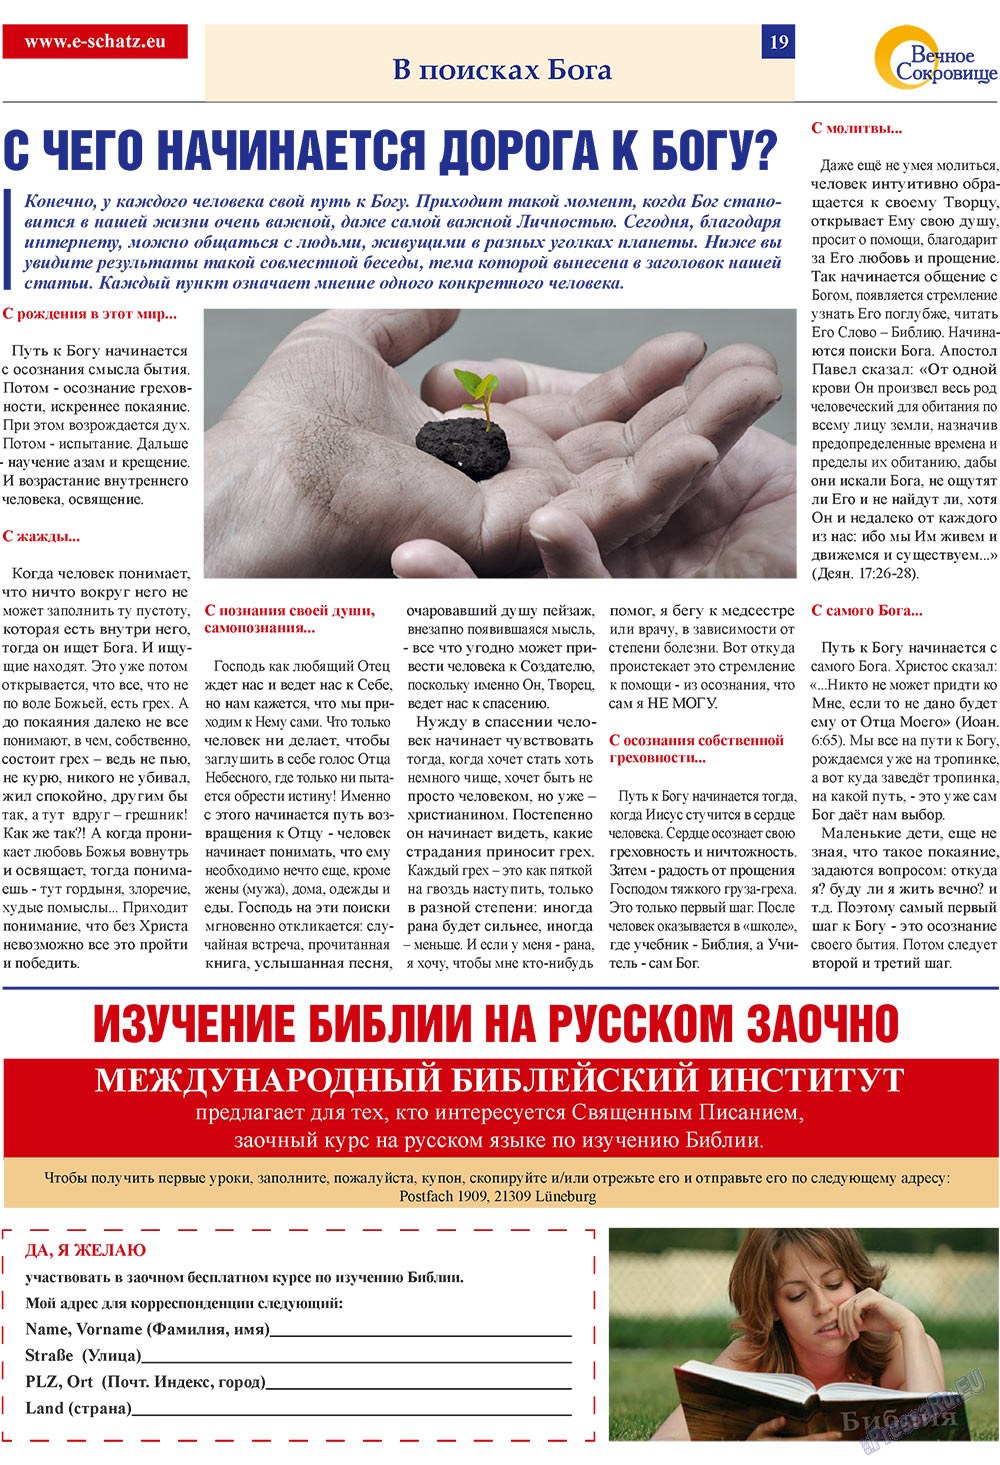 Вечное сокровище, газета. 2009 №2 стр.19